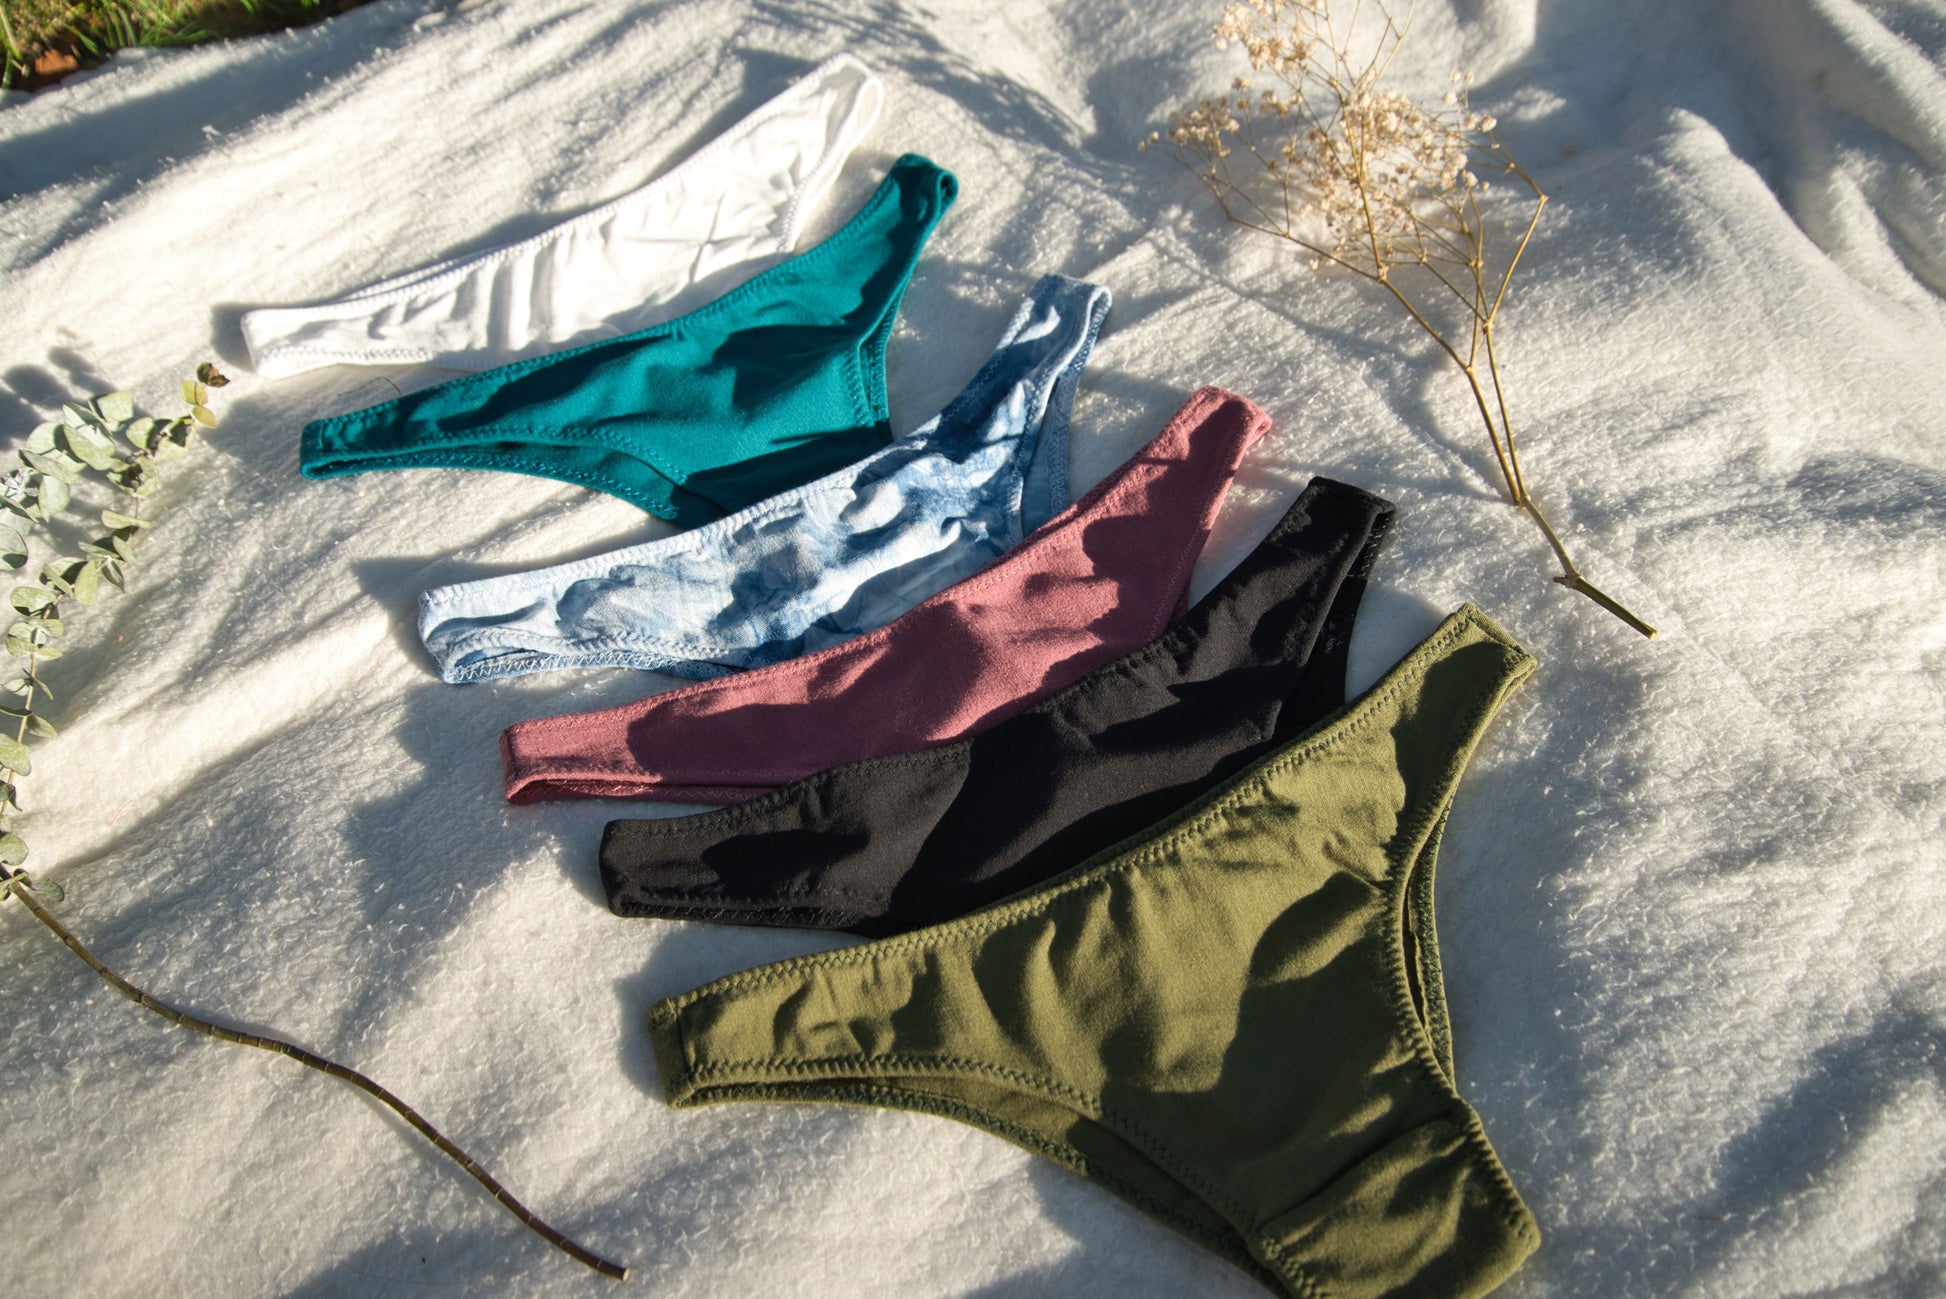  Undies.com Women's 6-Pack Cotton Thong Bikini